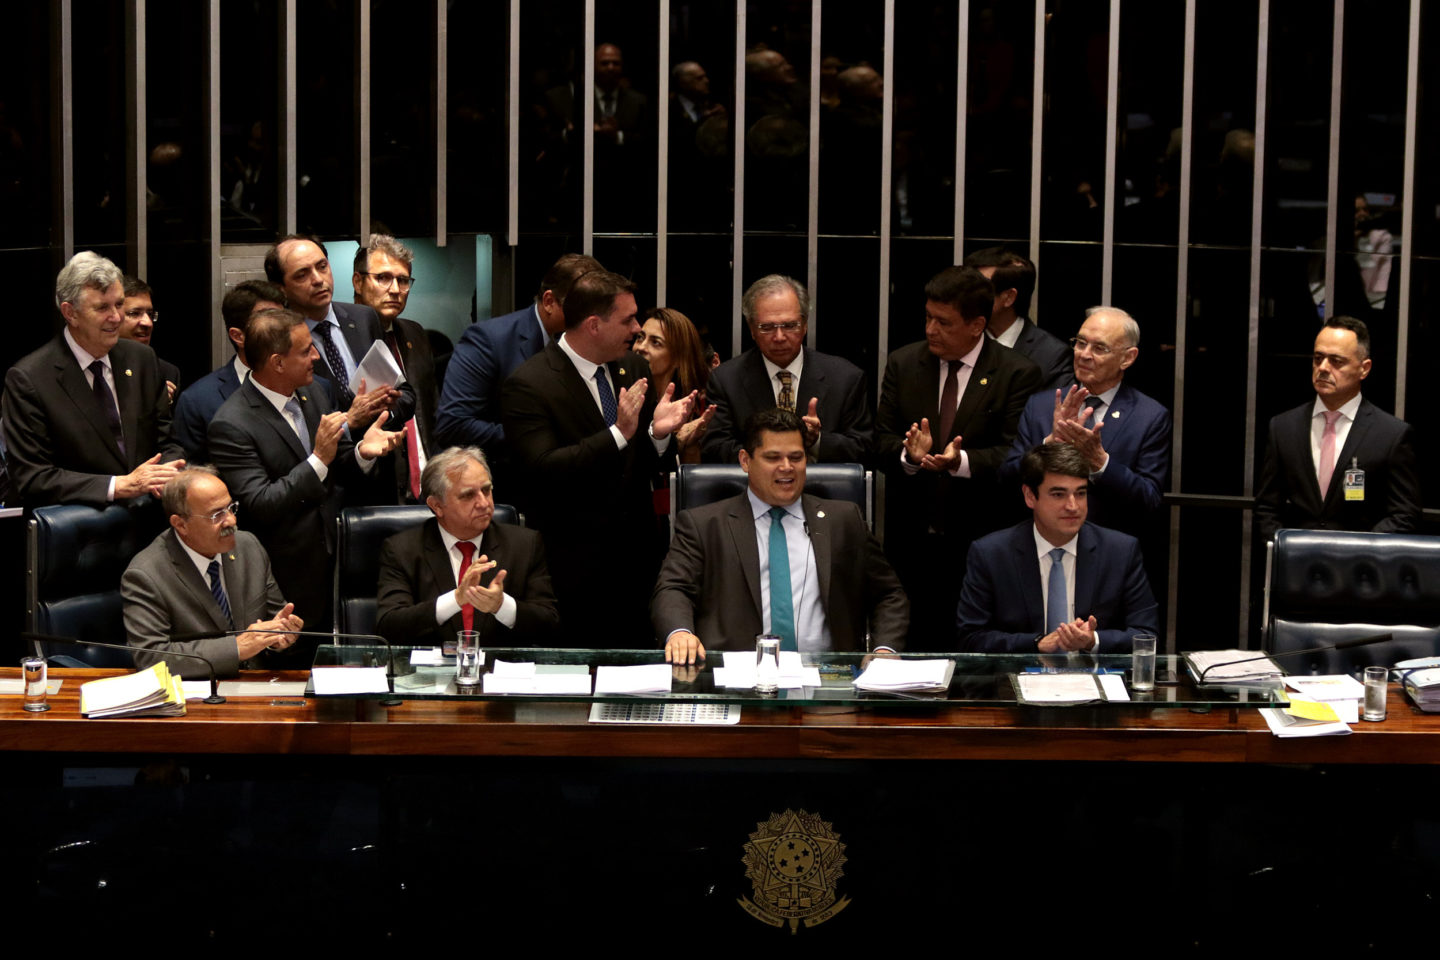 Brasilia - Reforma Da Previdencia